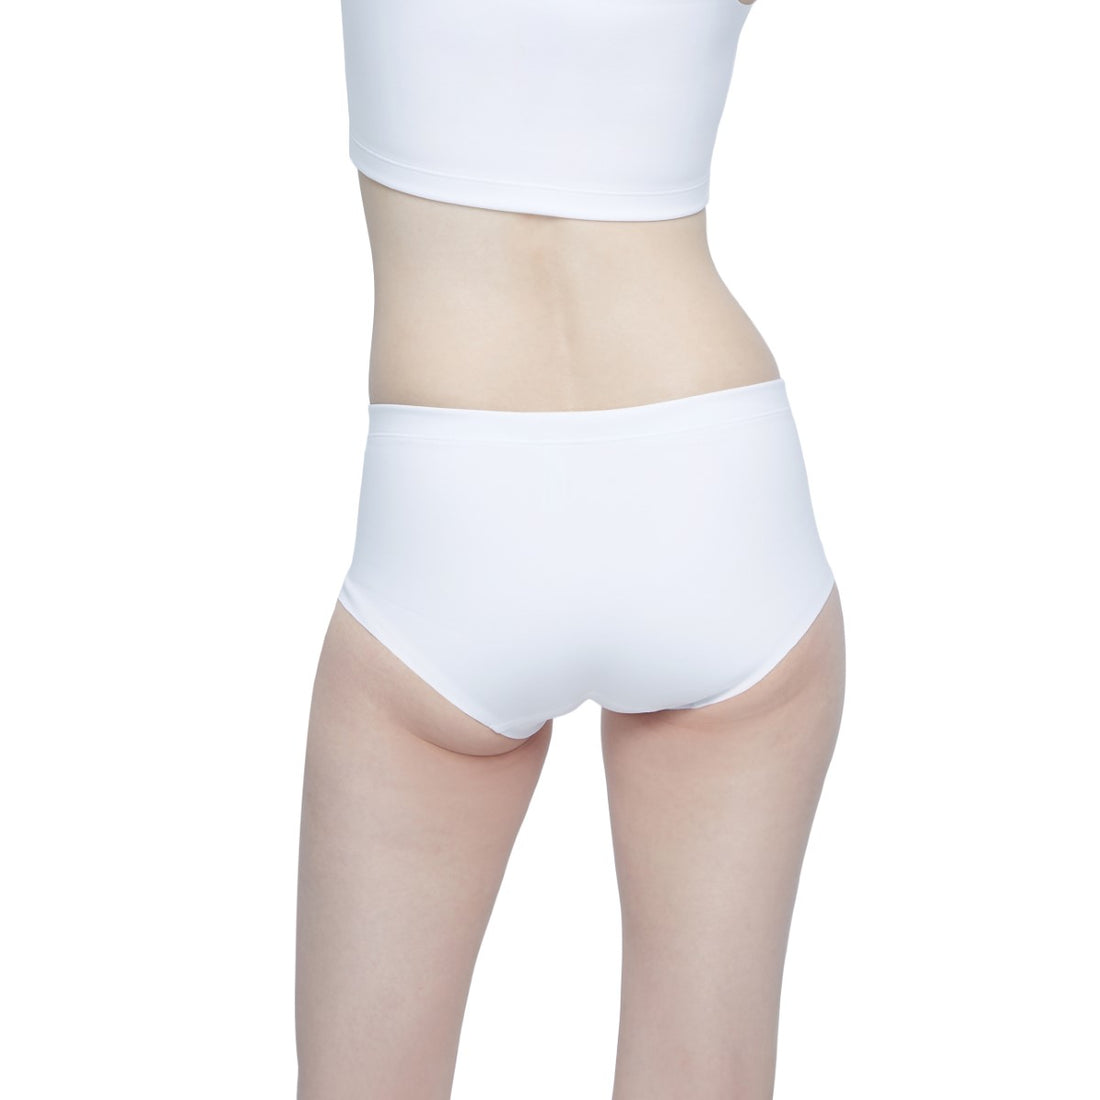 Wacoal FREEDOMเสื้อกล้ามกระชับอก Free cut แบบครึ่งตัว (เสื้อและกางเกงใน) รุ่น WX1509+WX2604 สีขาว (WH)